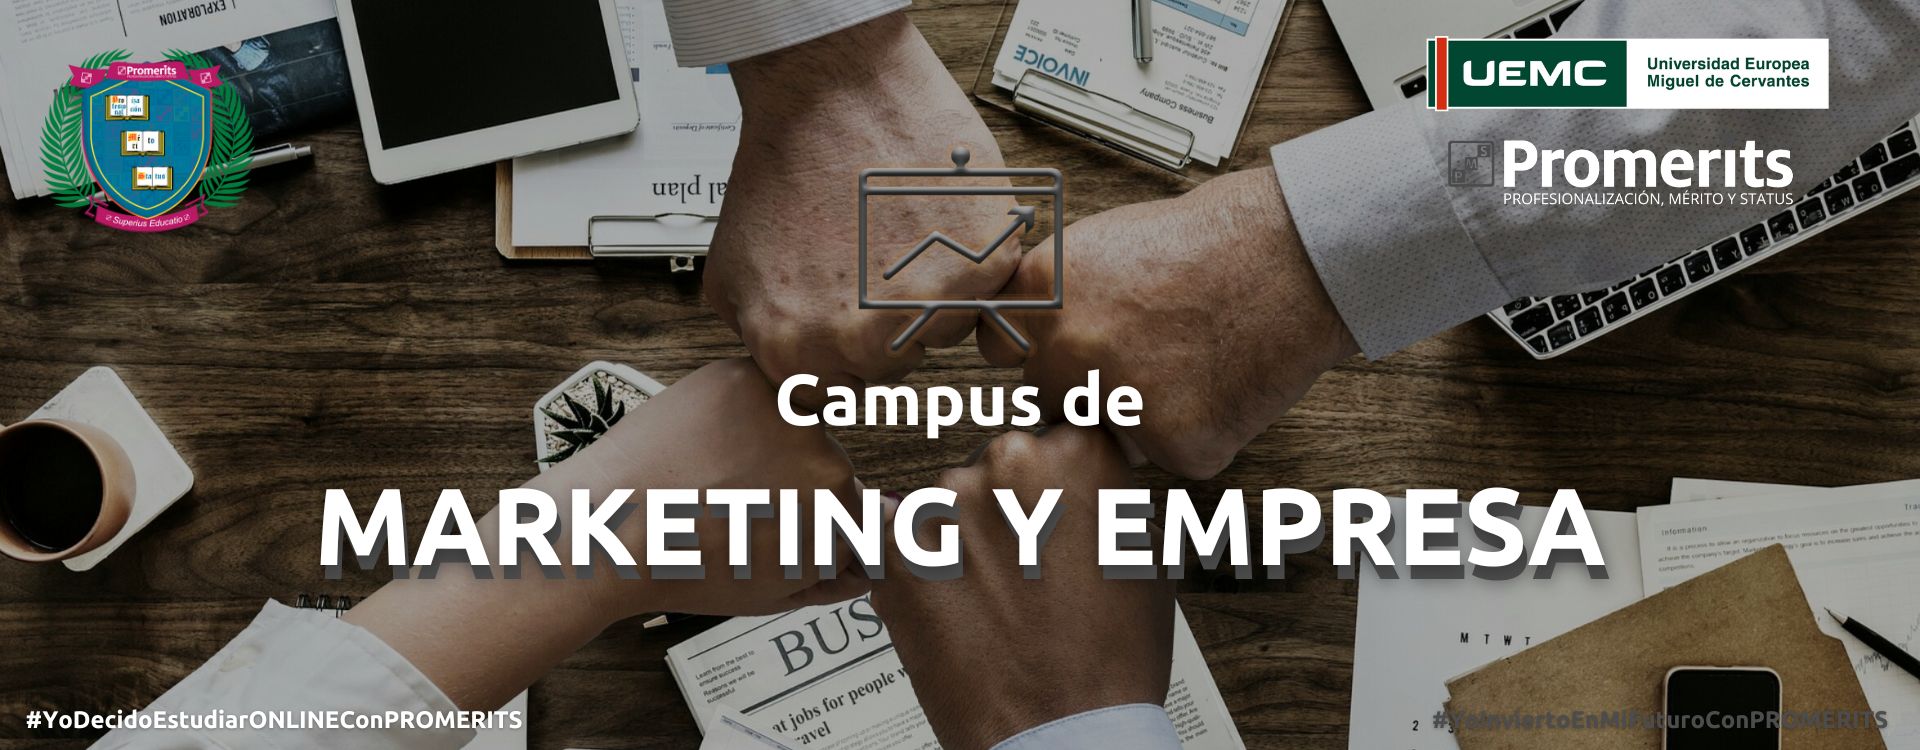 Campus de Marketing y empresa